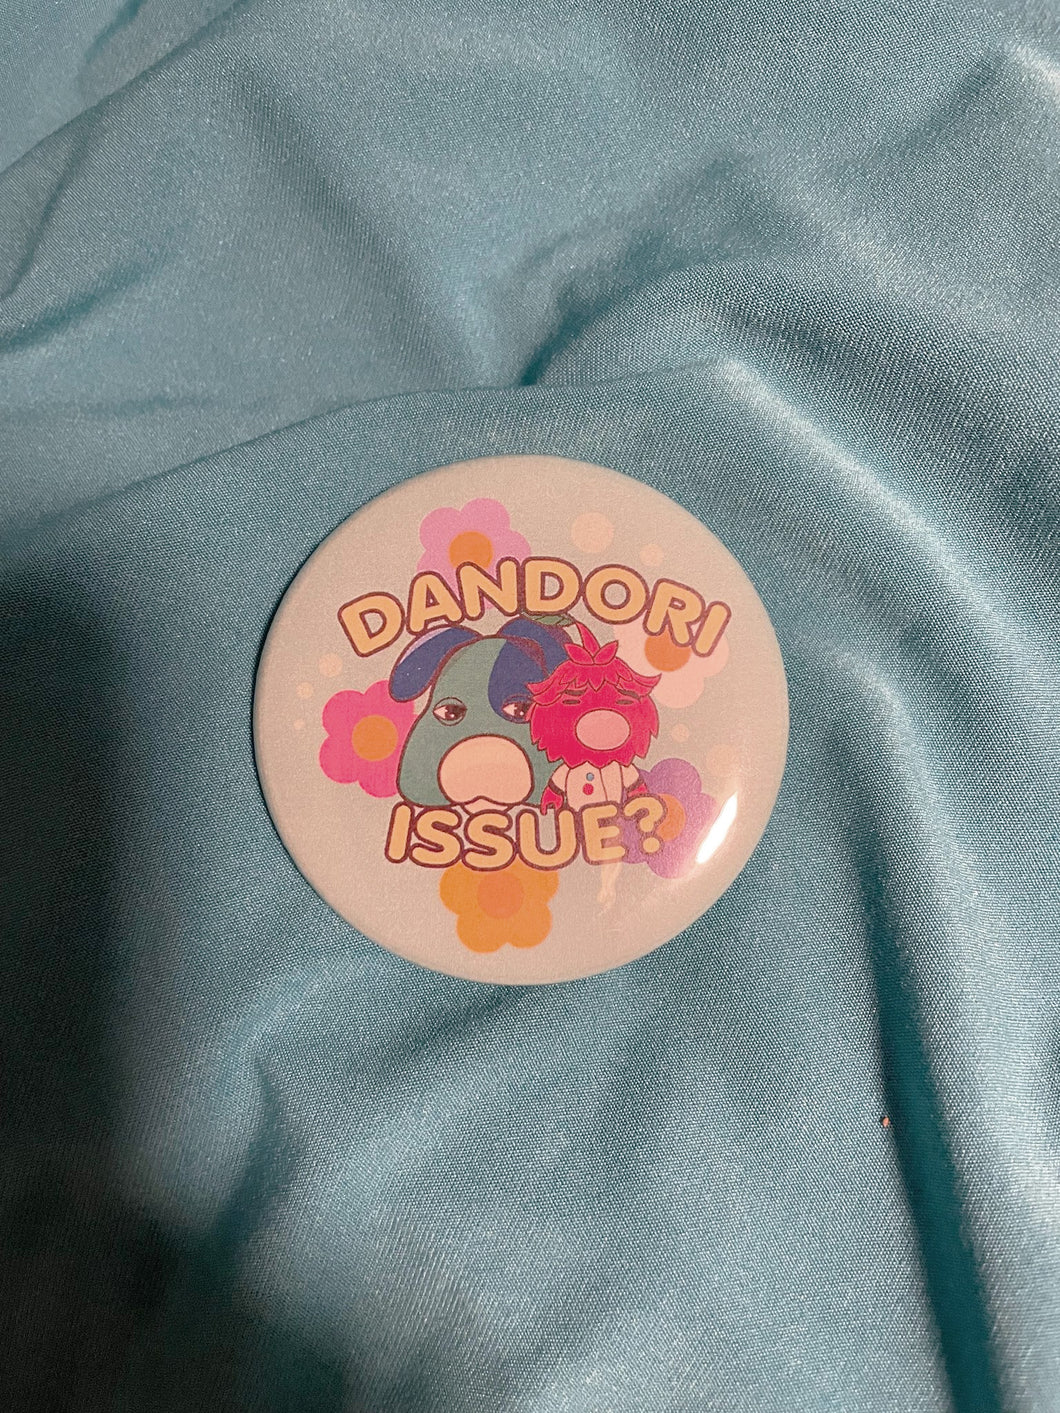 Dandori Issue Button Badge